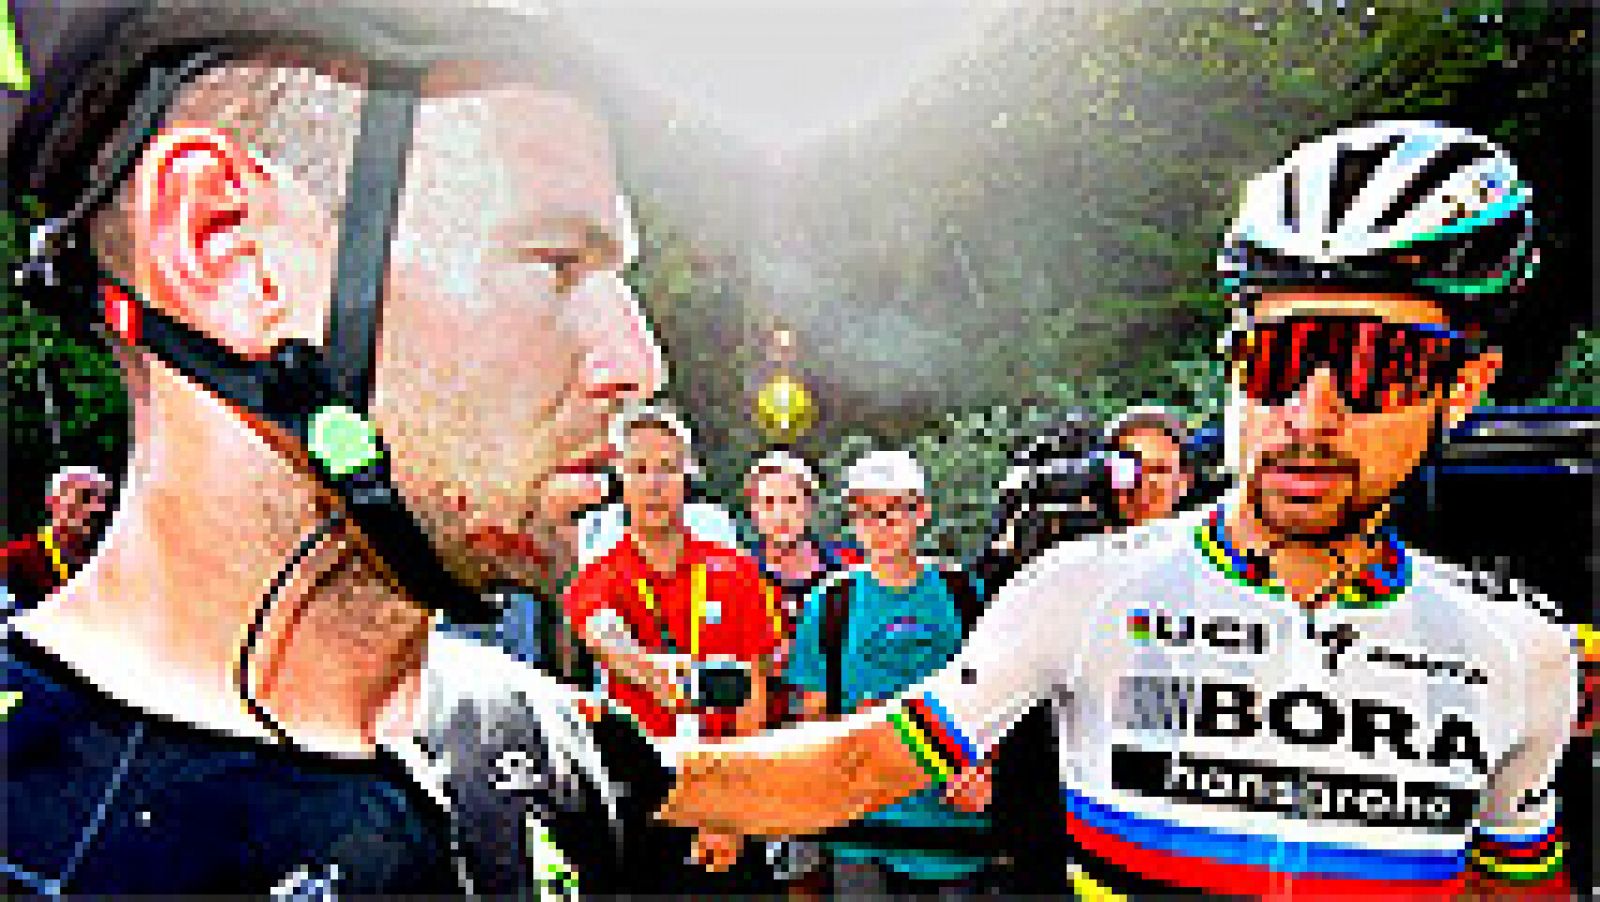 El ciclista eslovaco Peter Sagan (Bora-Hansgrohe) aseguró este  miércoles que acata la decisión de los jueces de la UCI de expulsarle  de Tour de Francia tras el incidente en el sprint de este martes en  Vittel, en la cuarta etapa de la ronda gala, e